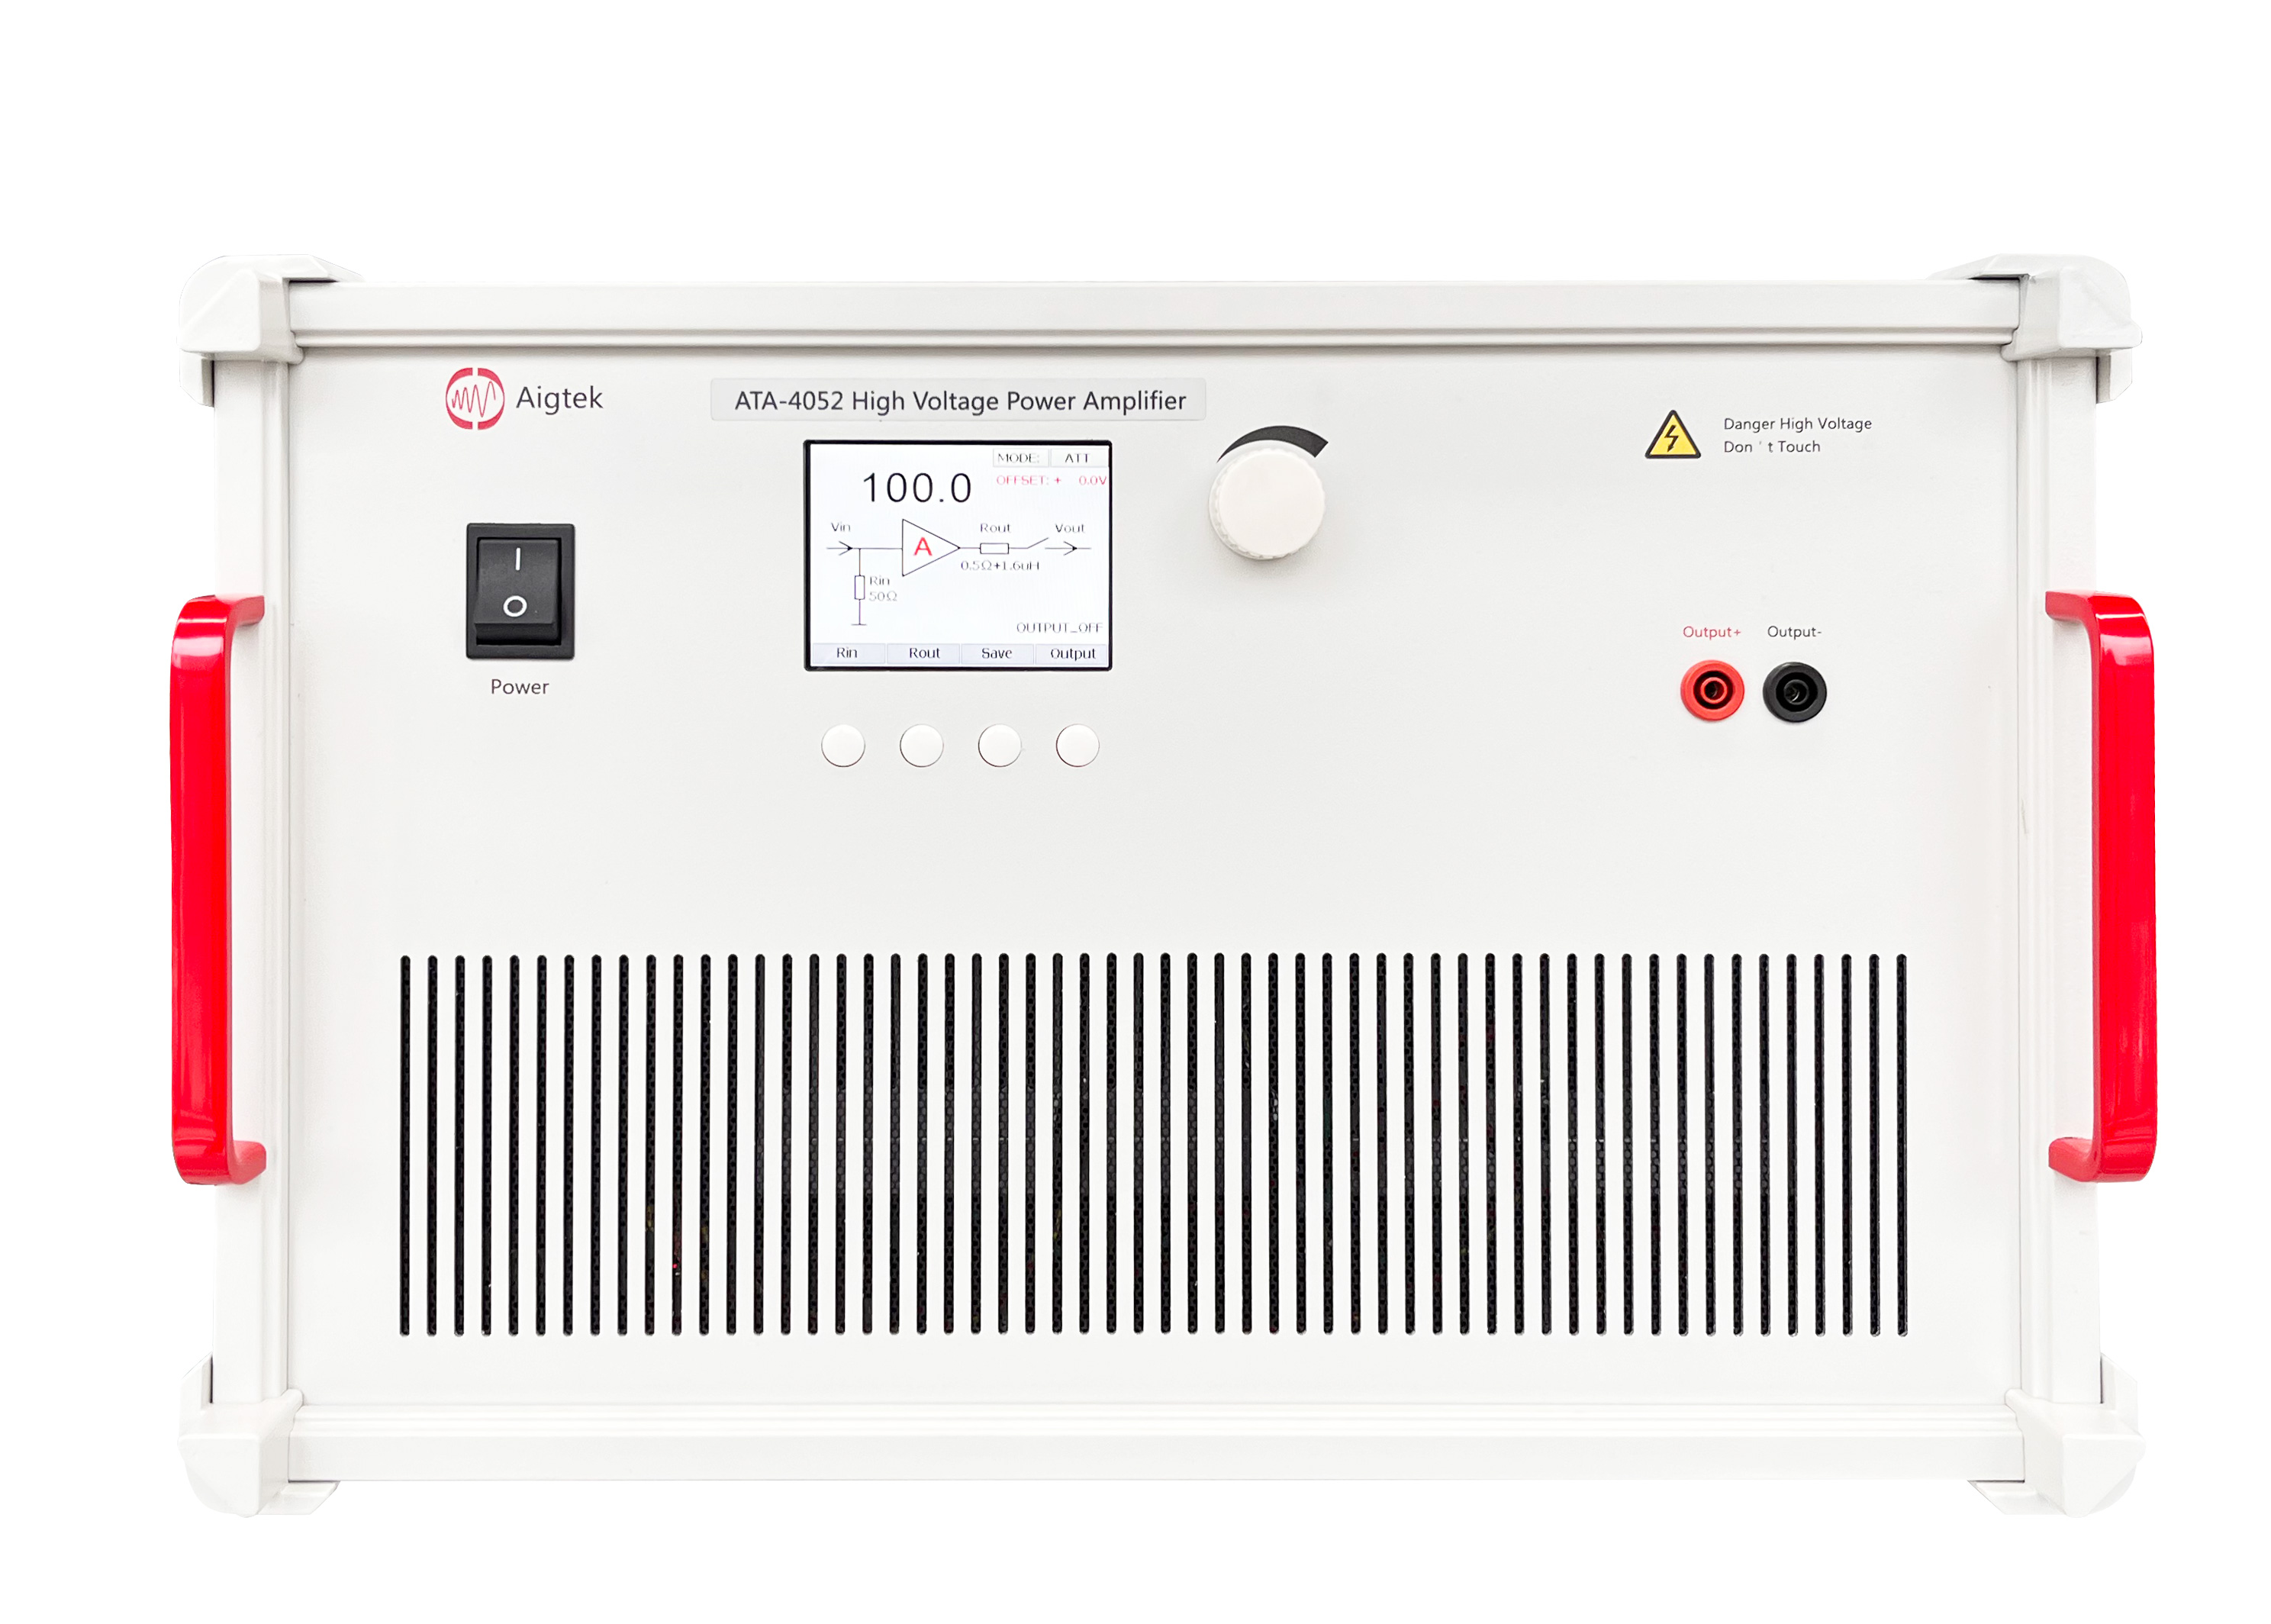 ATA-4052 High Voltage Power Amplifier